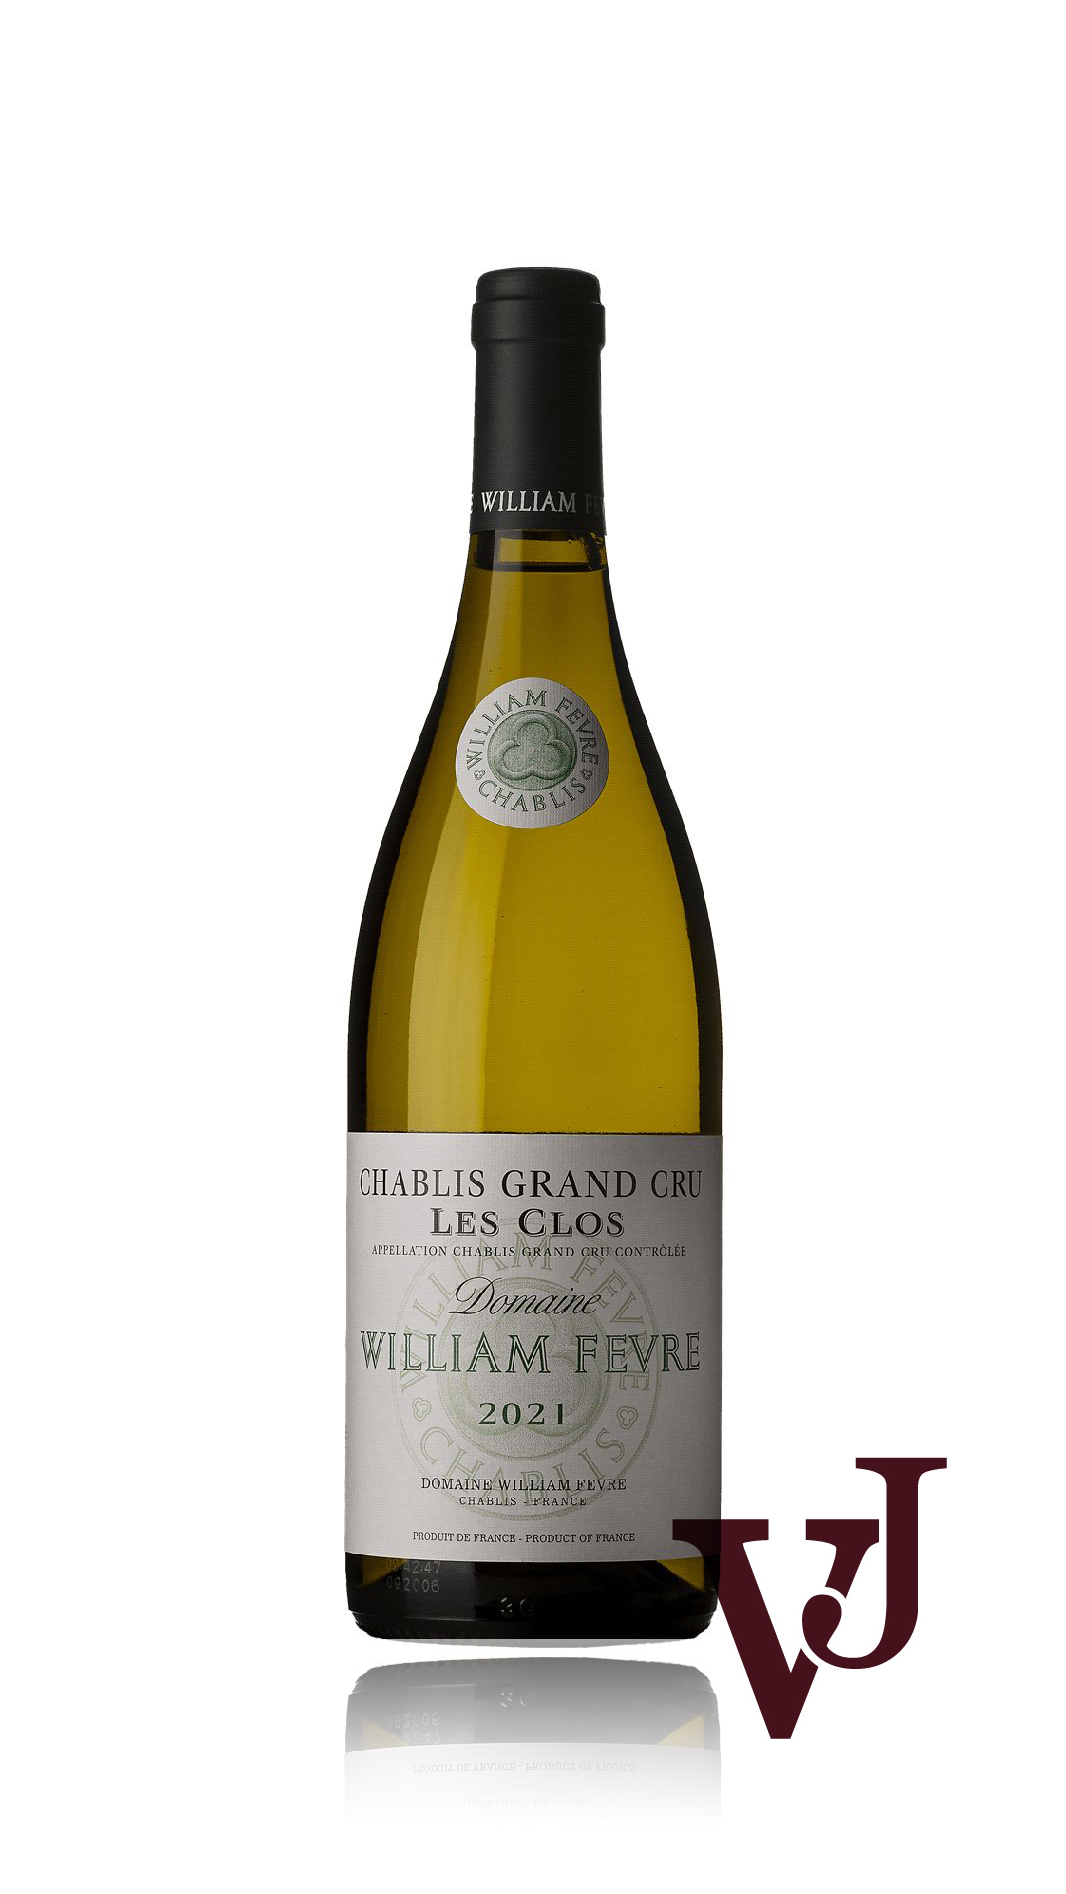 Vitt Vin - Chablis Grand Cru Les Clos William Fèvre 2021 artikel nummer 9509501 från producenten Domaine William Fèvre från området Frankrike